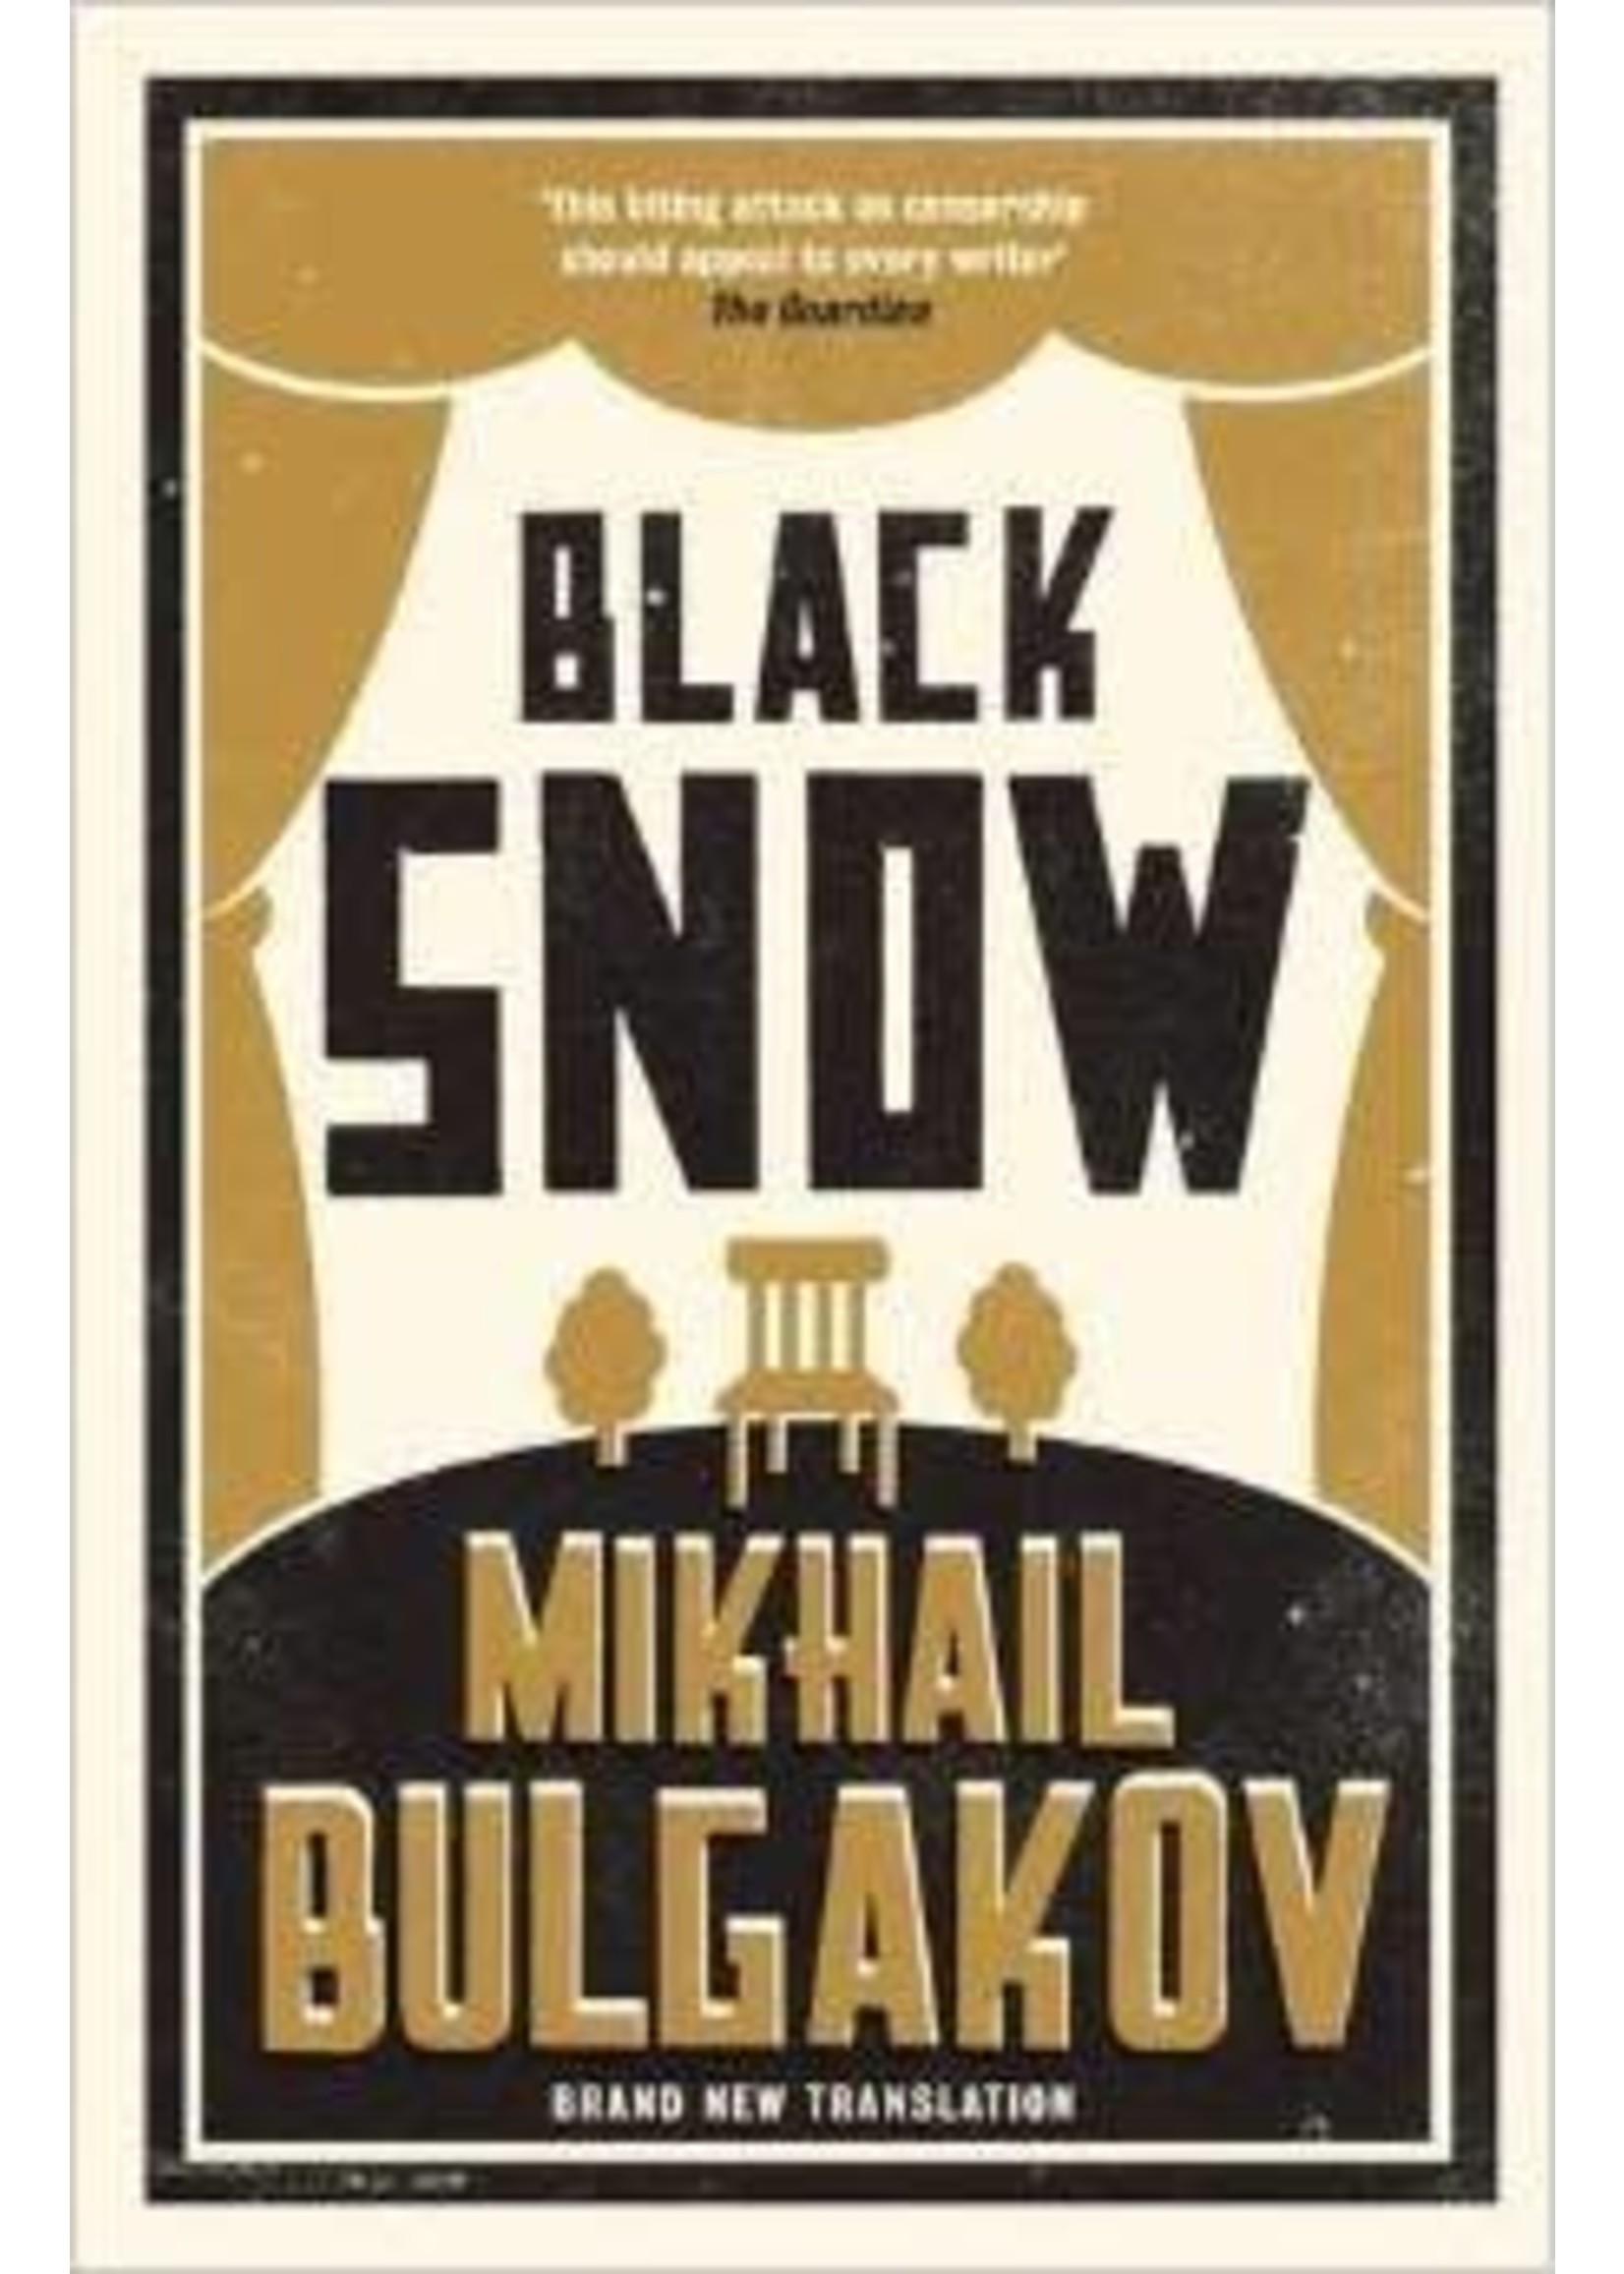 Black Snow by Mikhail Bulgakov